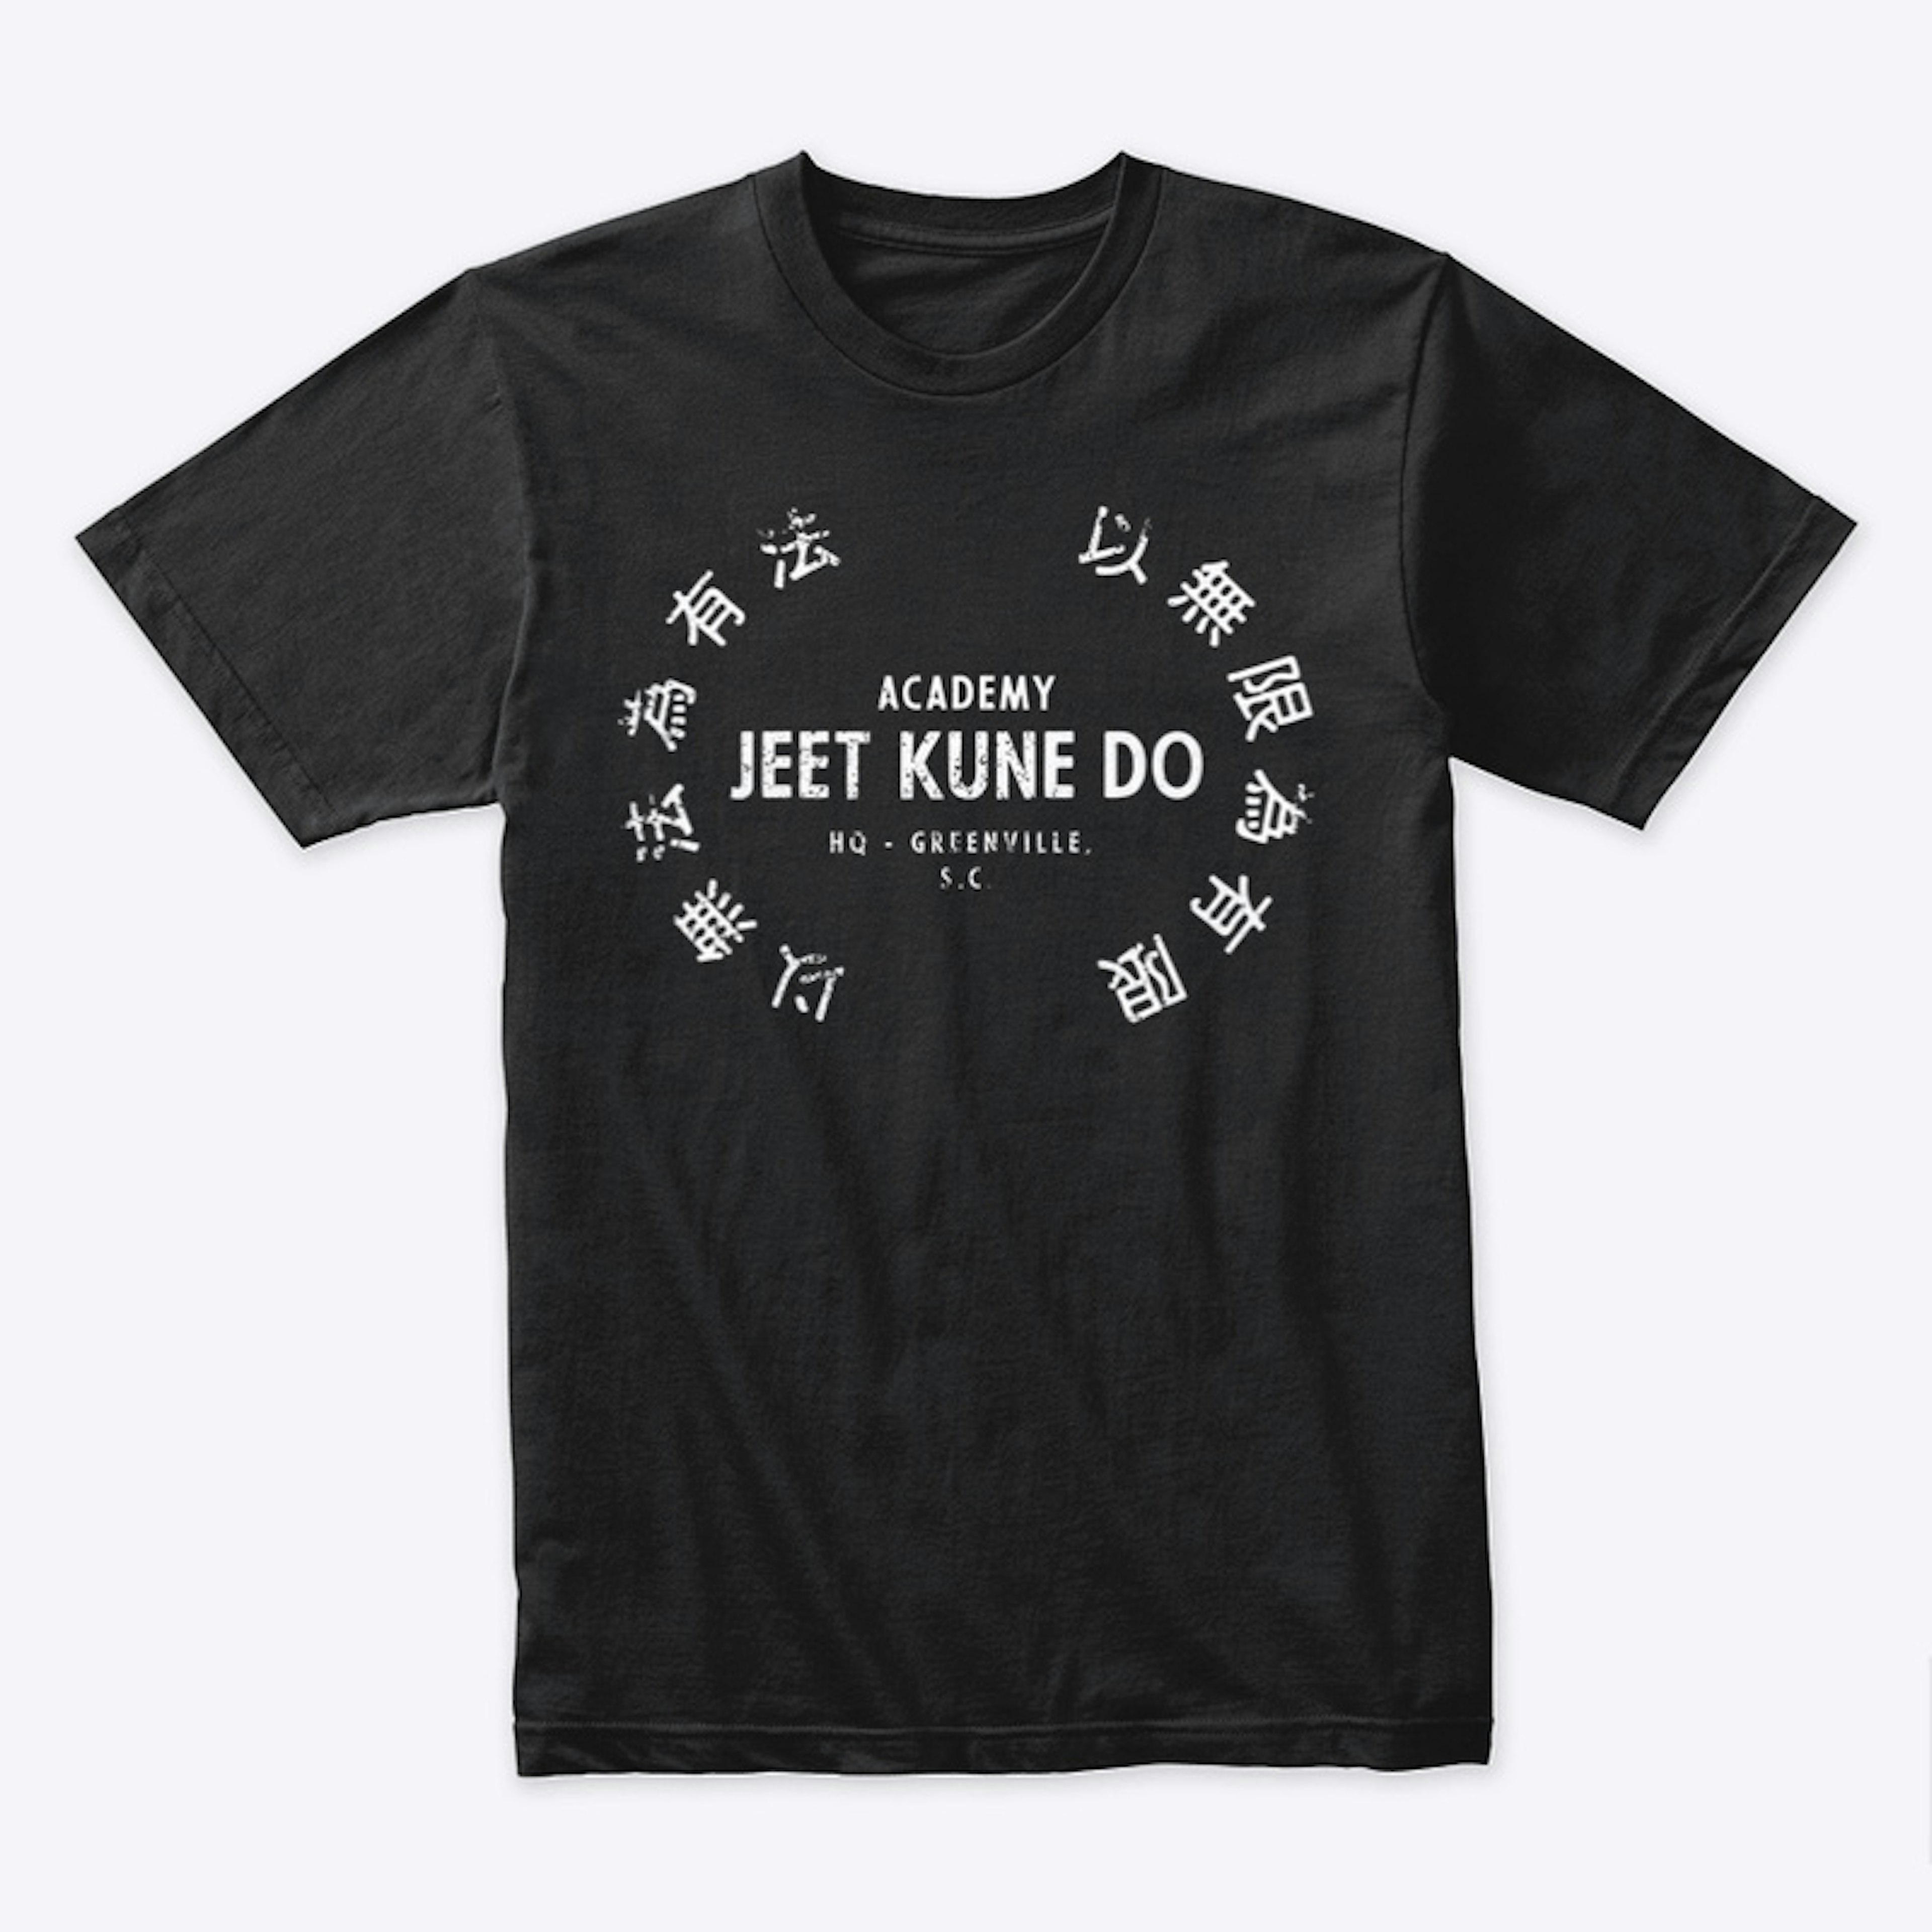 Academy Jeet Kune Do Shirt